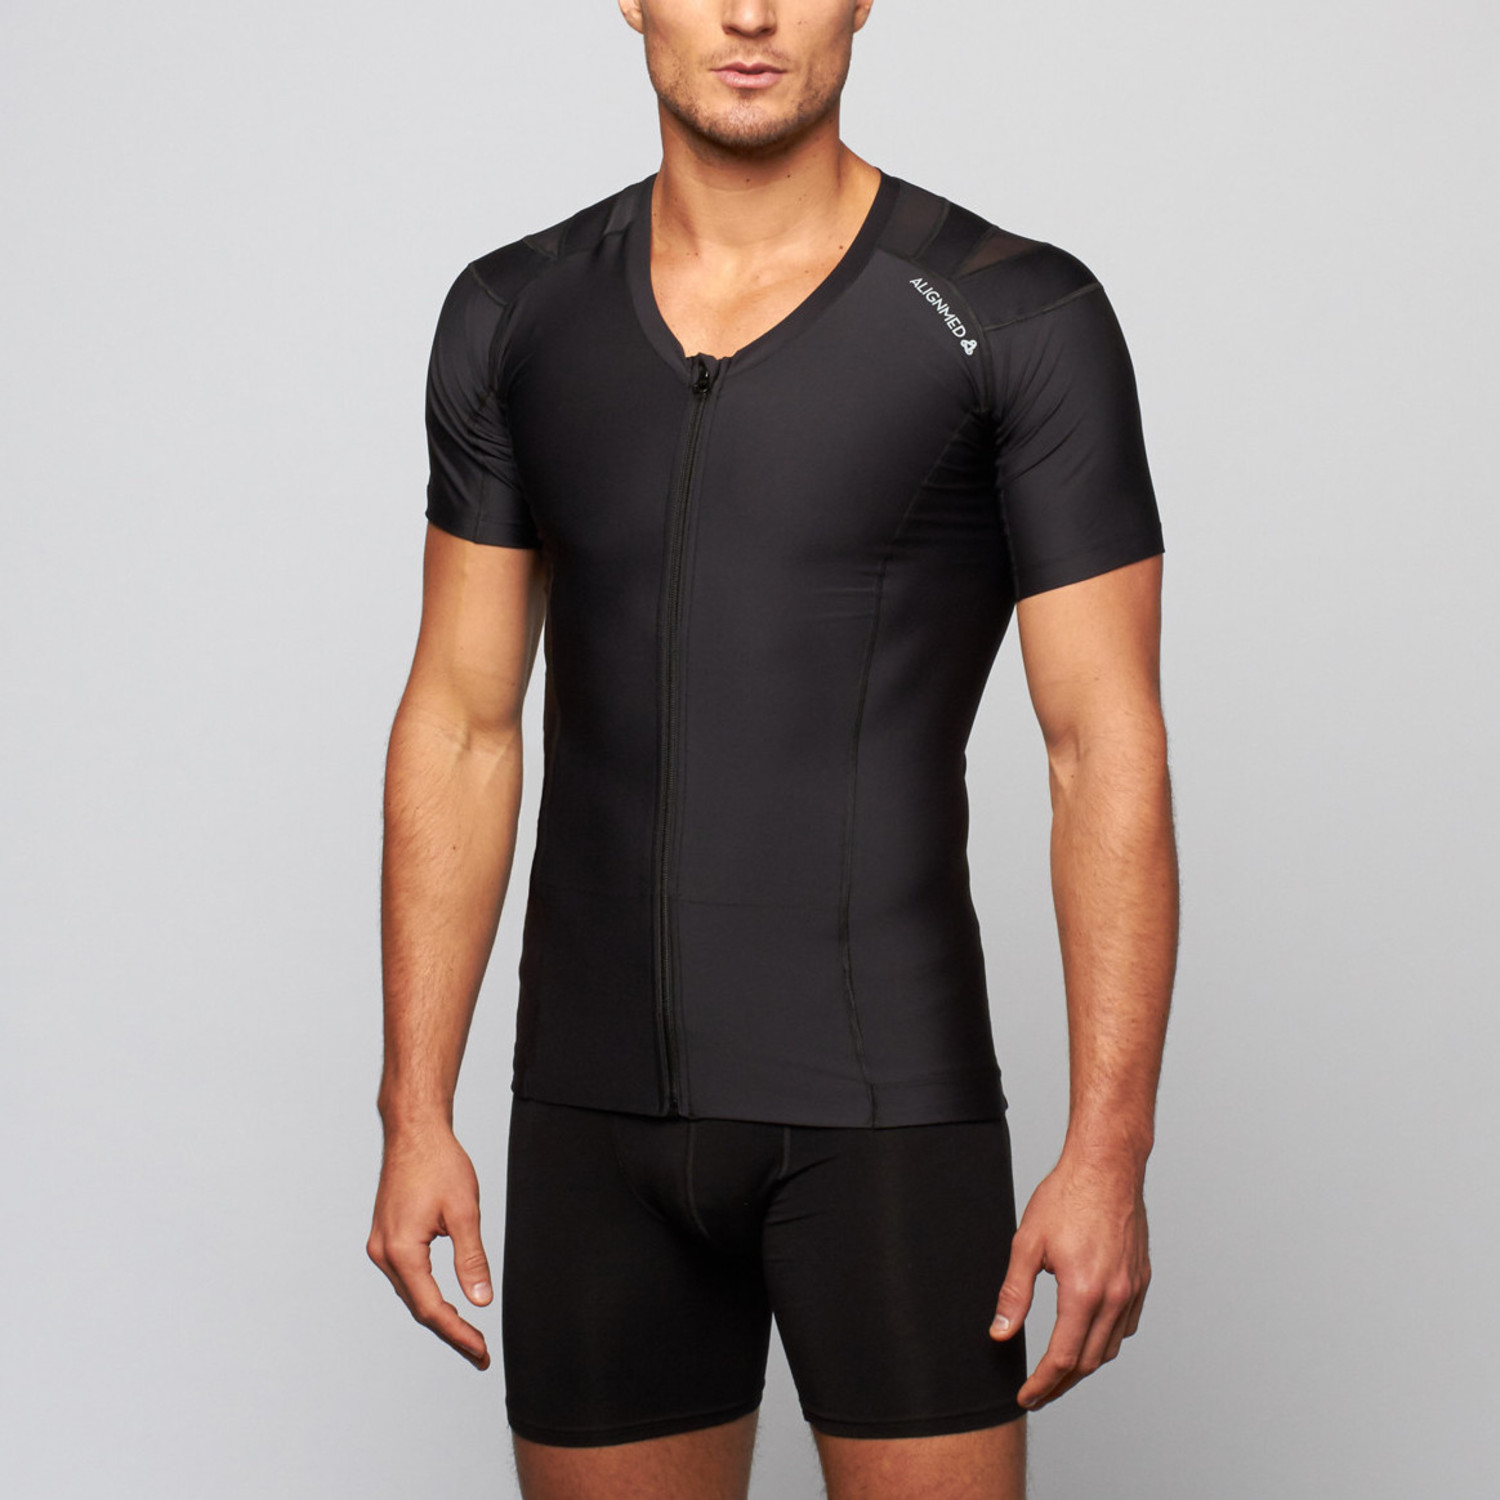 Men's Zipper Posture Shirt 2.0 // Black (L) - AlignMed Athletic